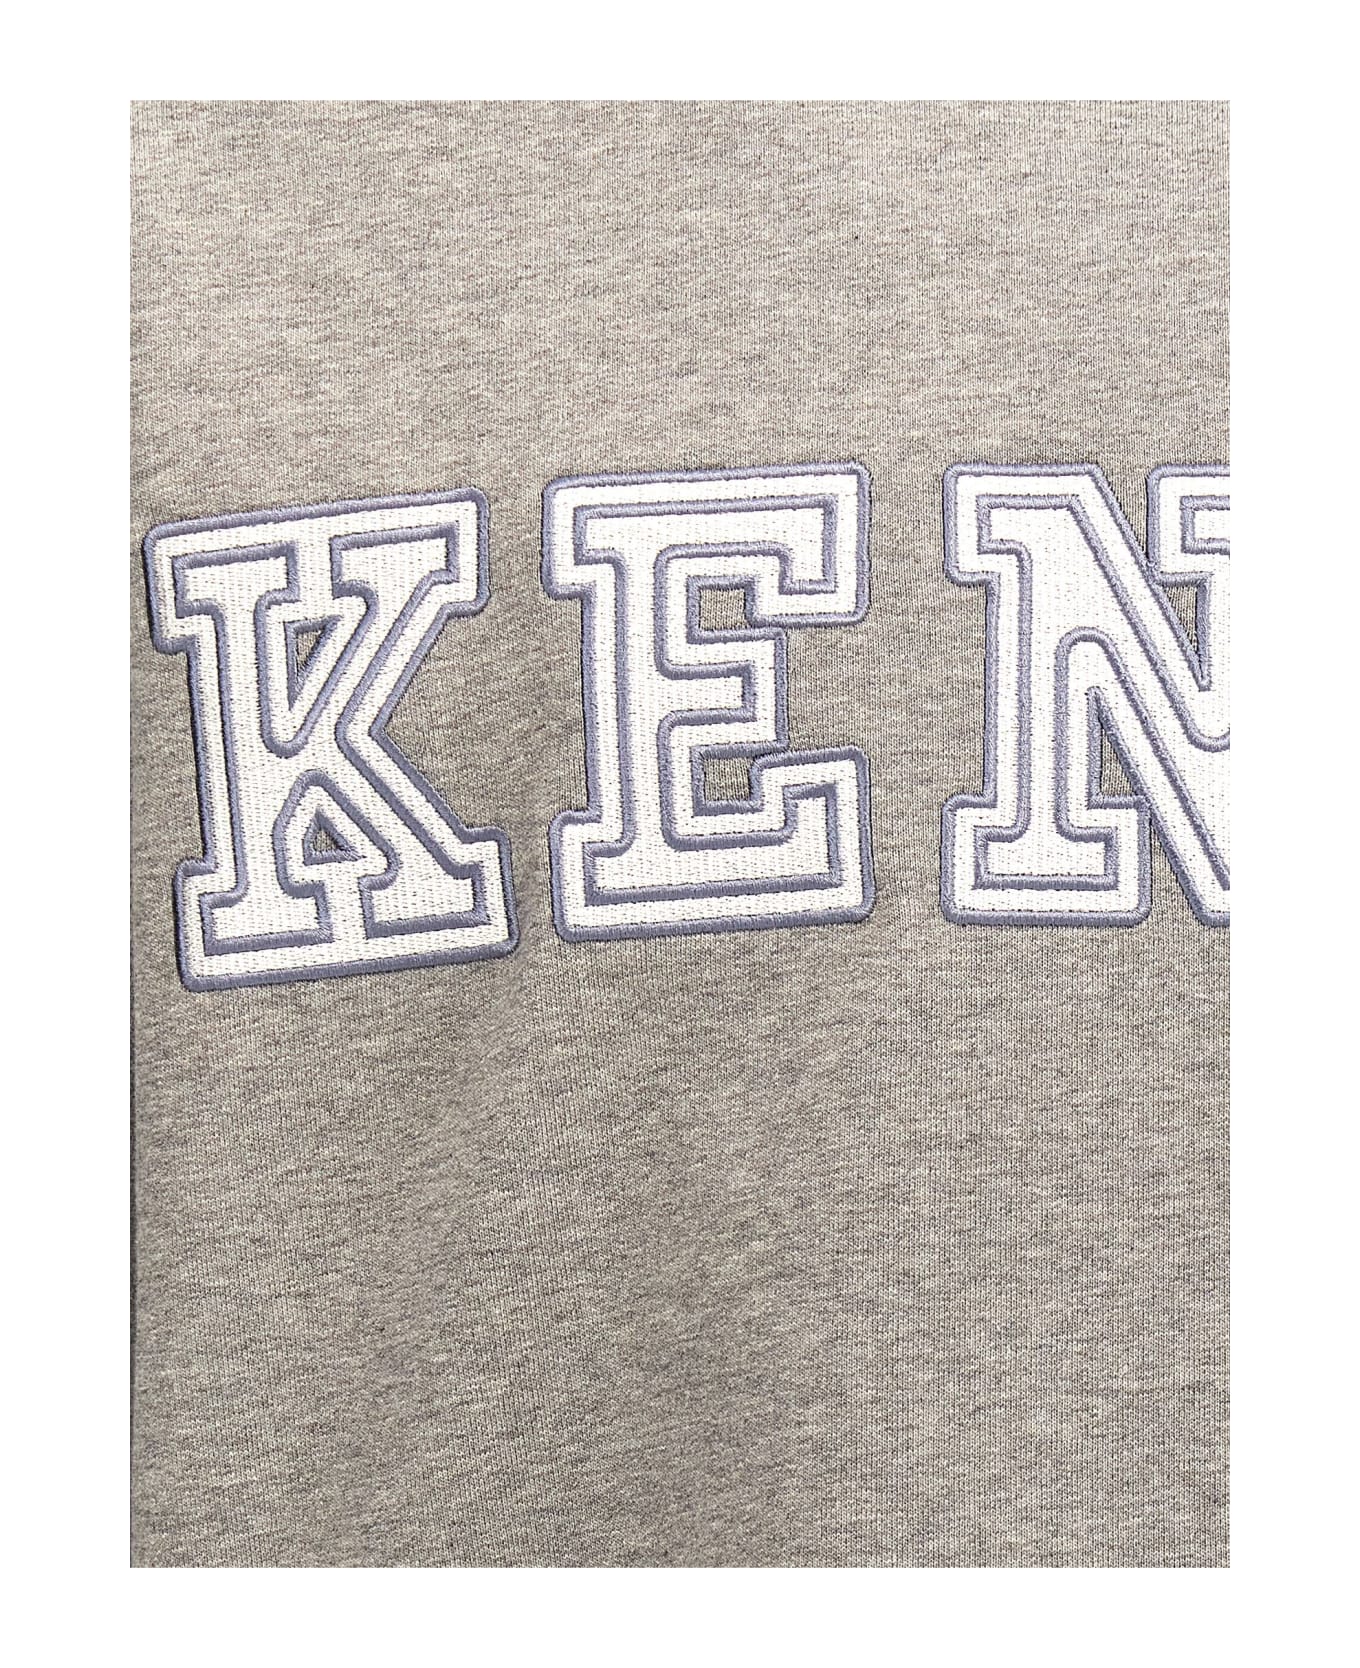 Kenzo Academy Classic Sweatshirt - GREY フリース